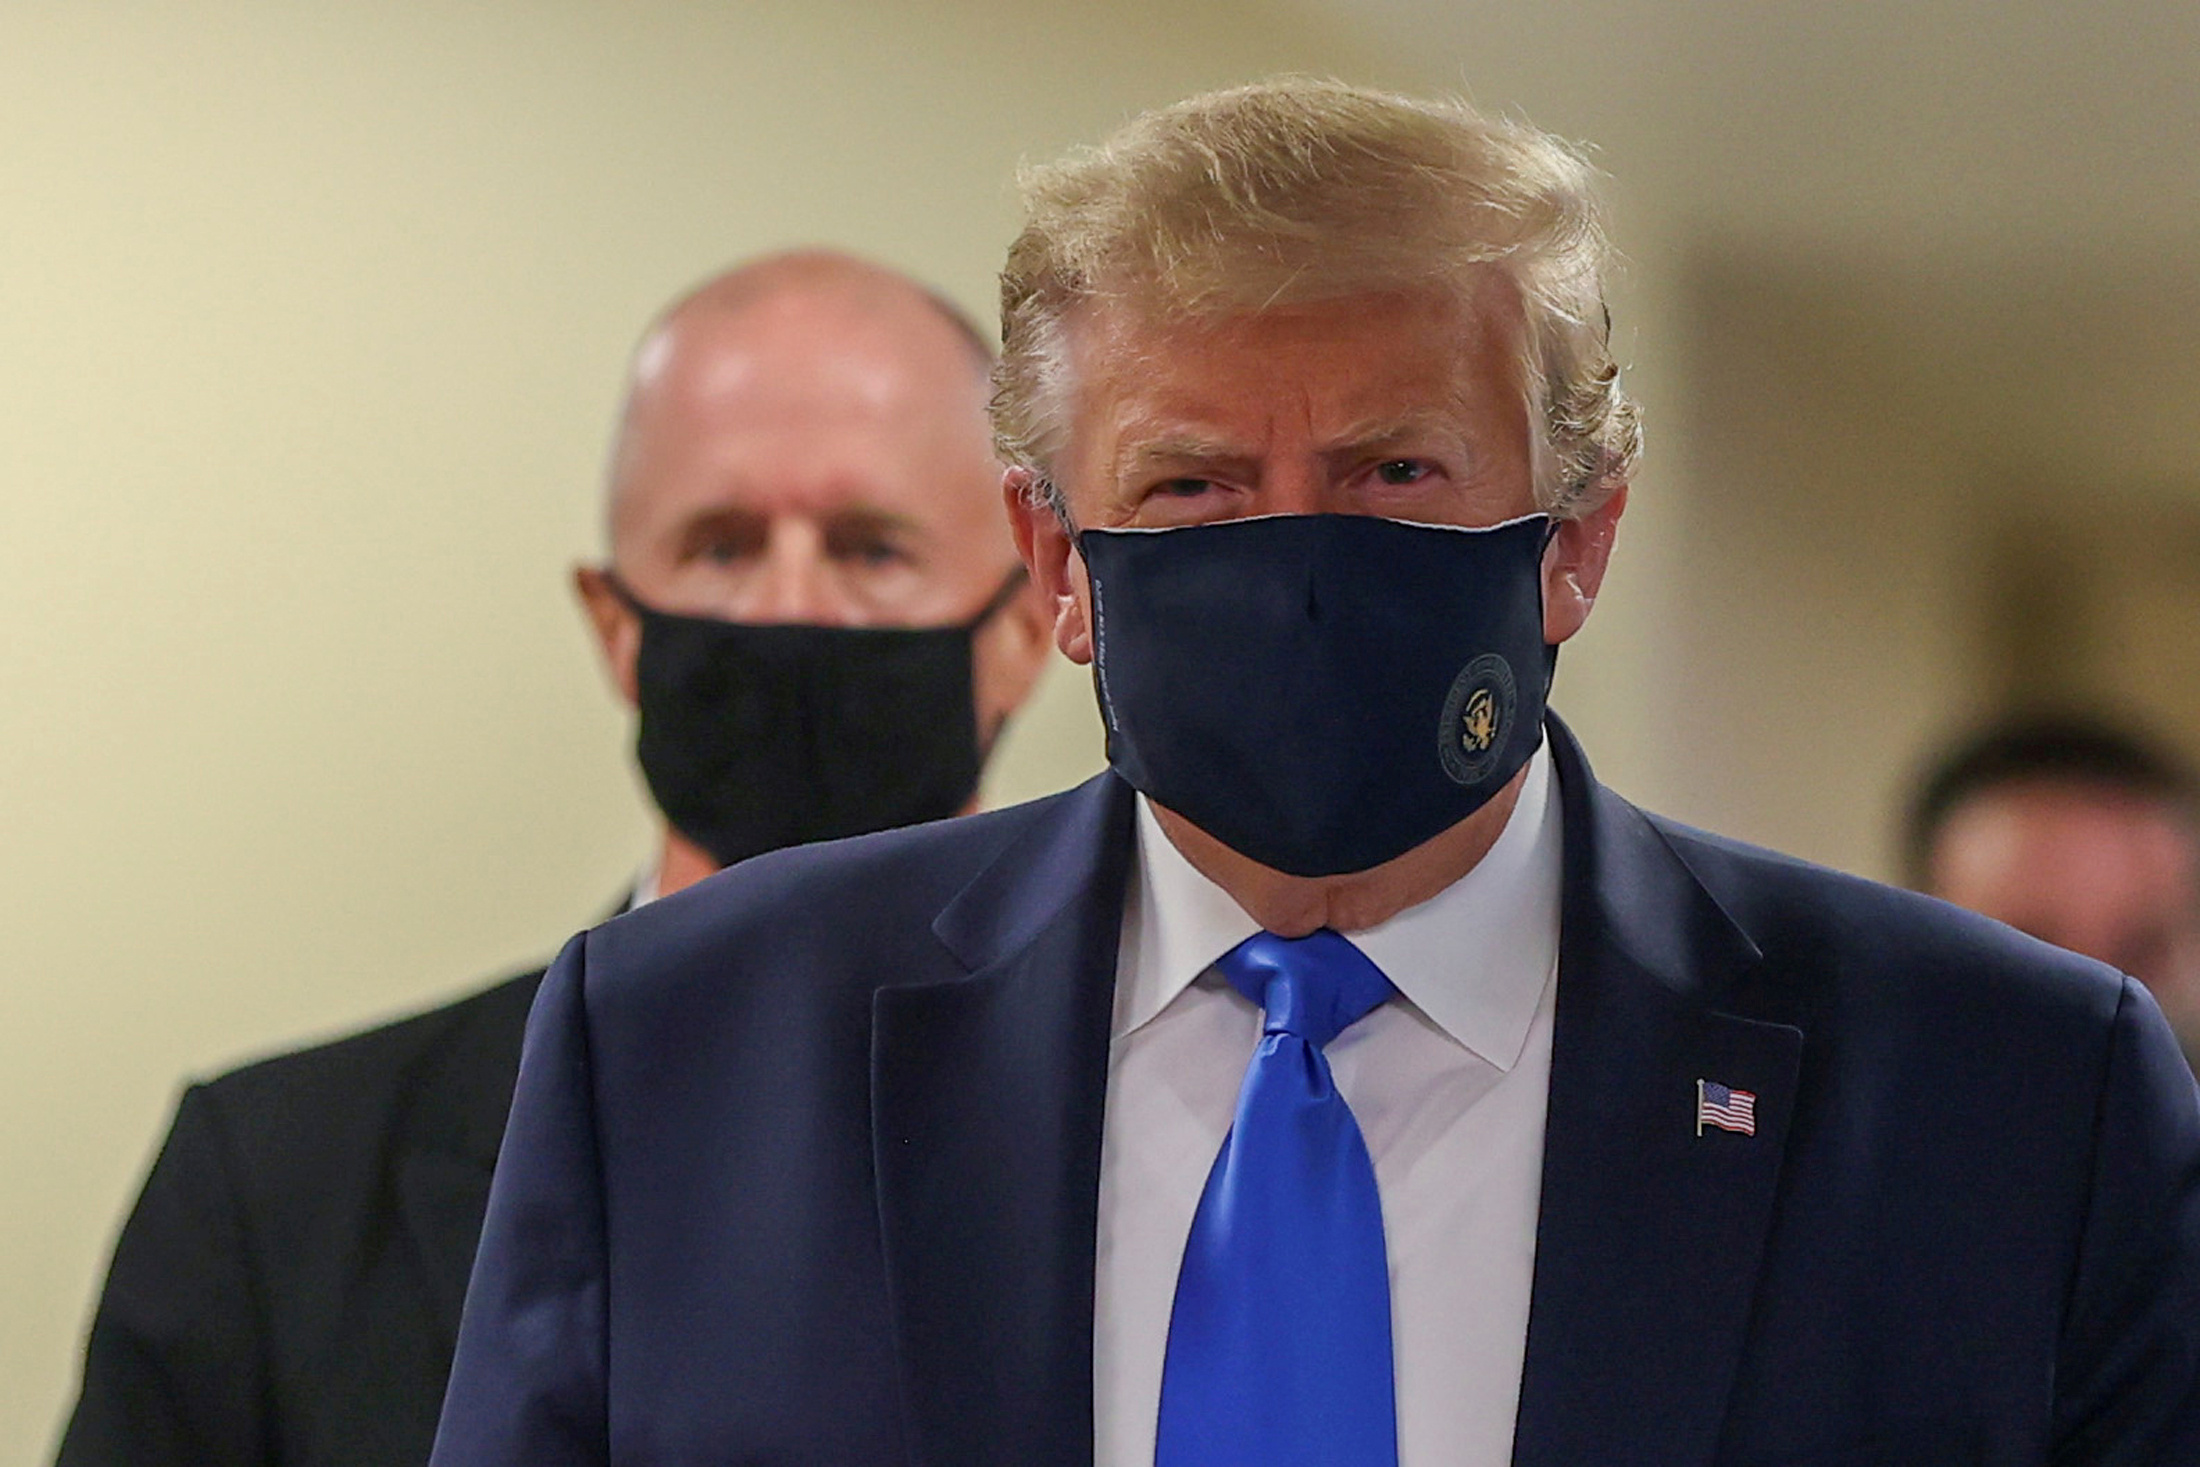 La FOTO: Trump usó mascarilla por primera vez en su visita a un centro médico militar